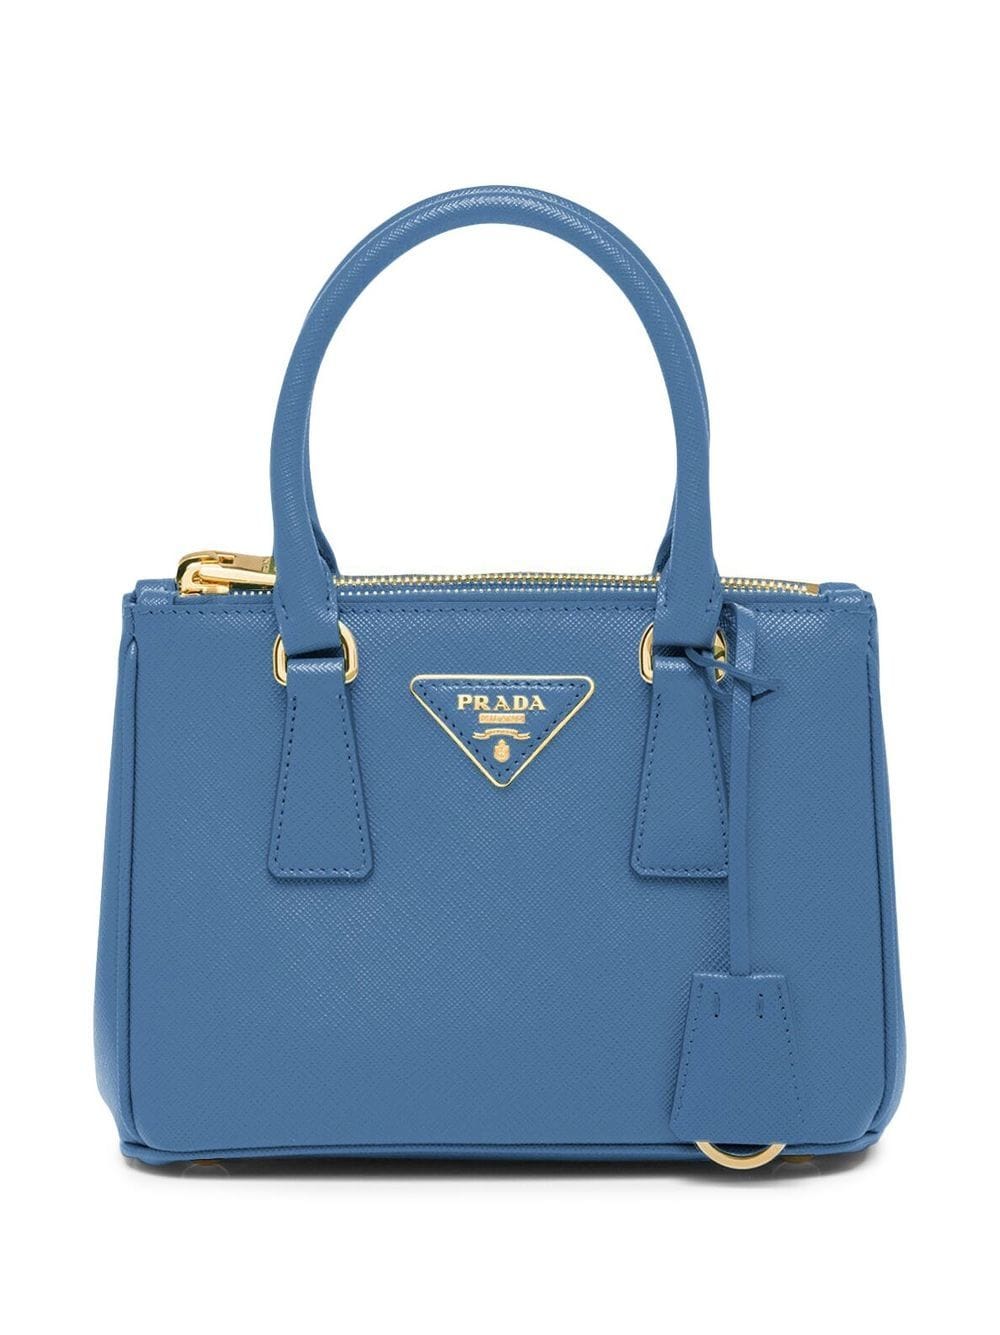 Image 1 of Prada Galleria leather mini bag